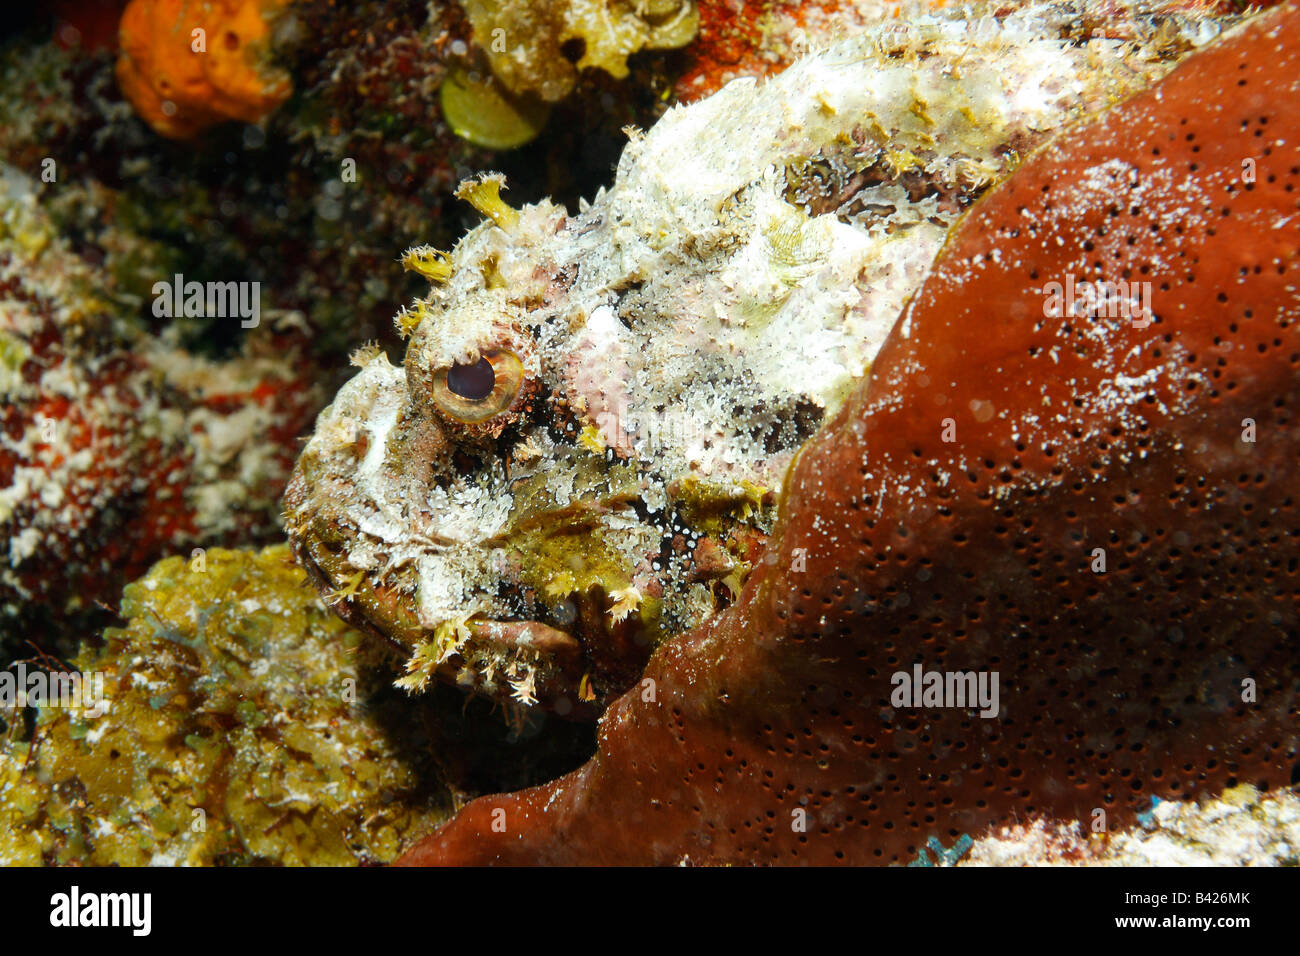 Ein close-up Gesicht Schuss von Spotted Drachenköpfe getarnt passend Korallenriff und felsigen Boden des Ozeans. Stockfoto